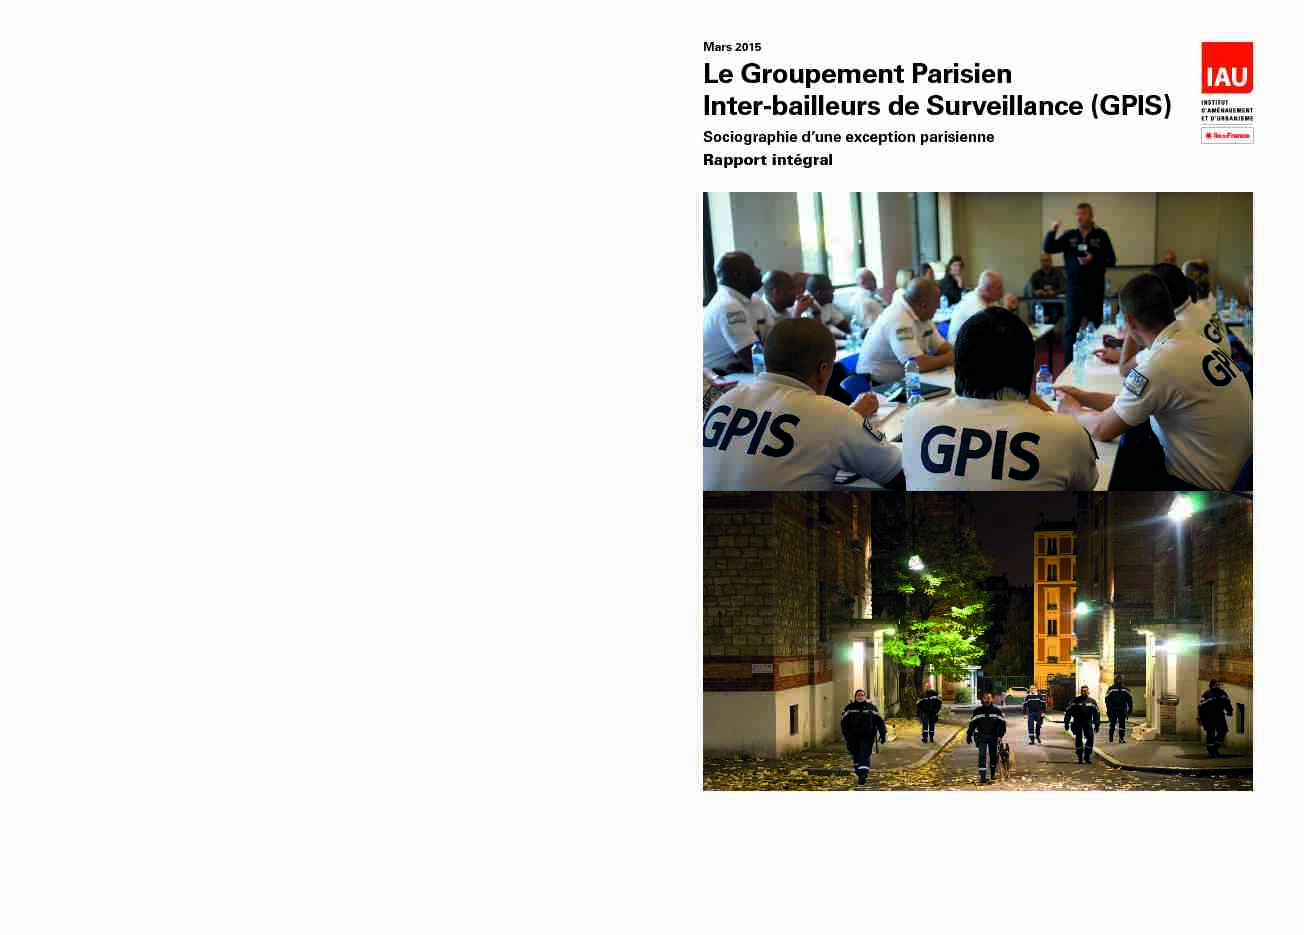 Le Groupement Parisien Inter-bailleurs de Surveillance (GPIS)